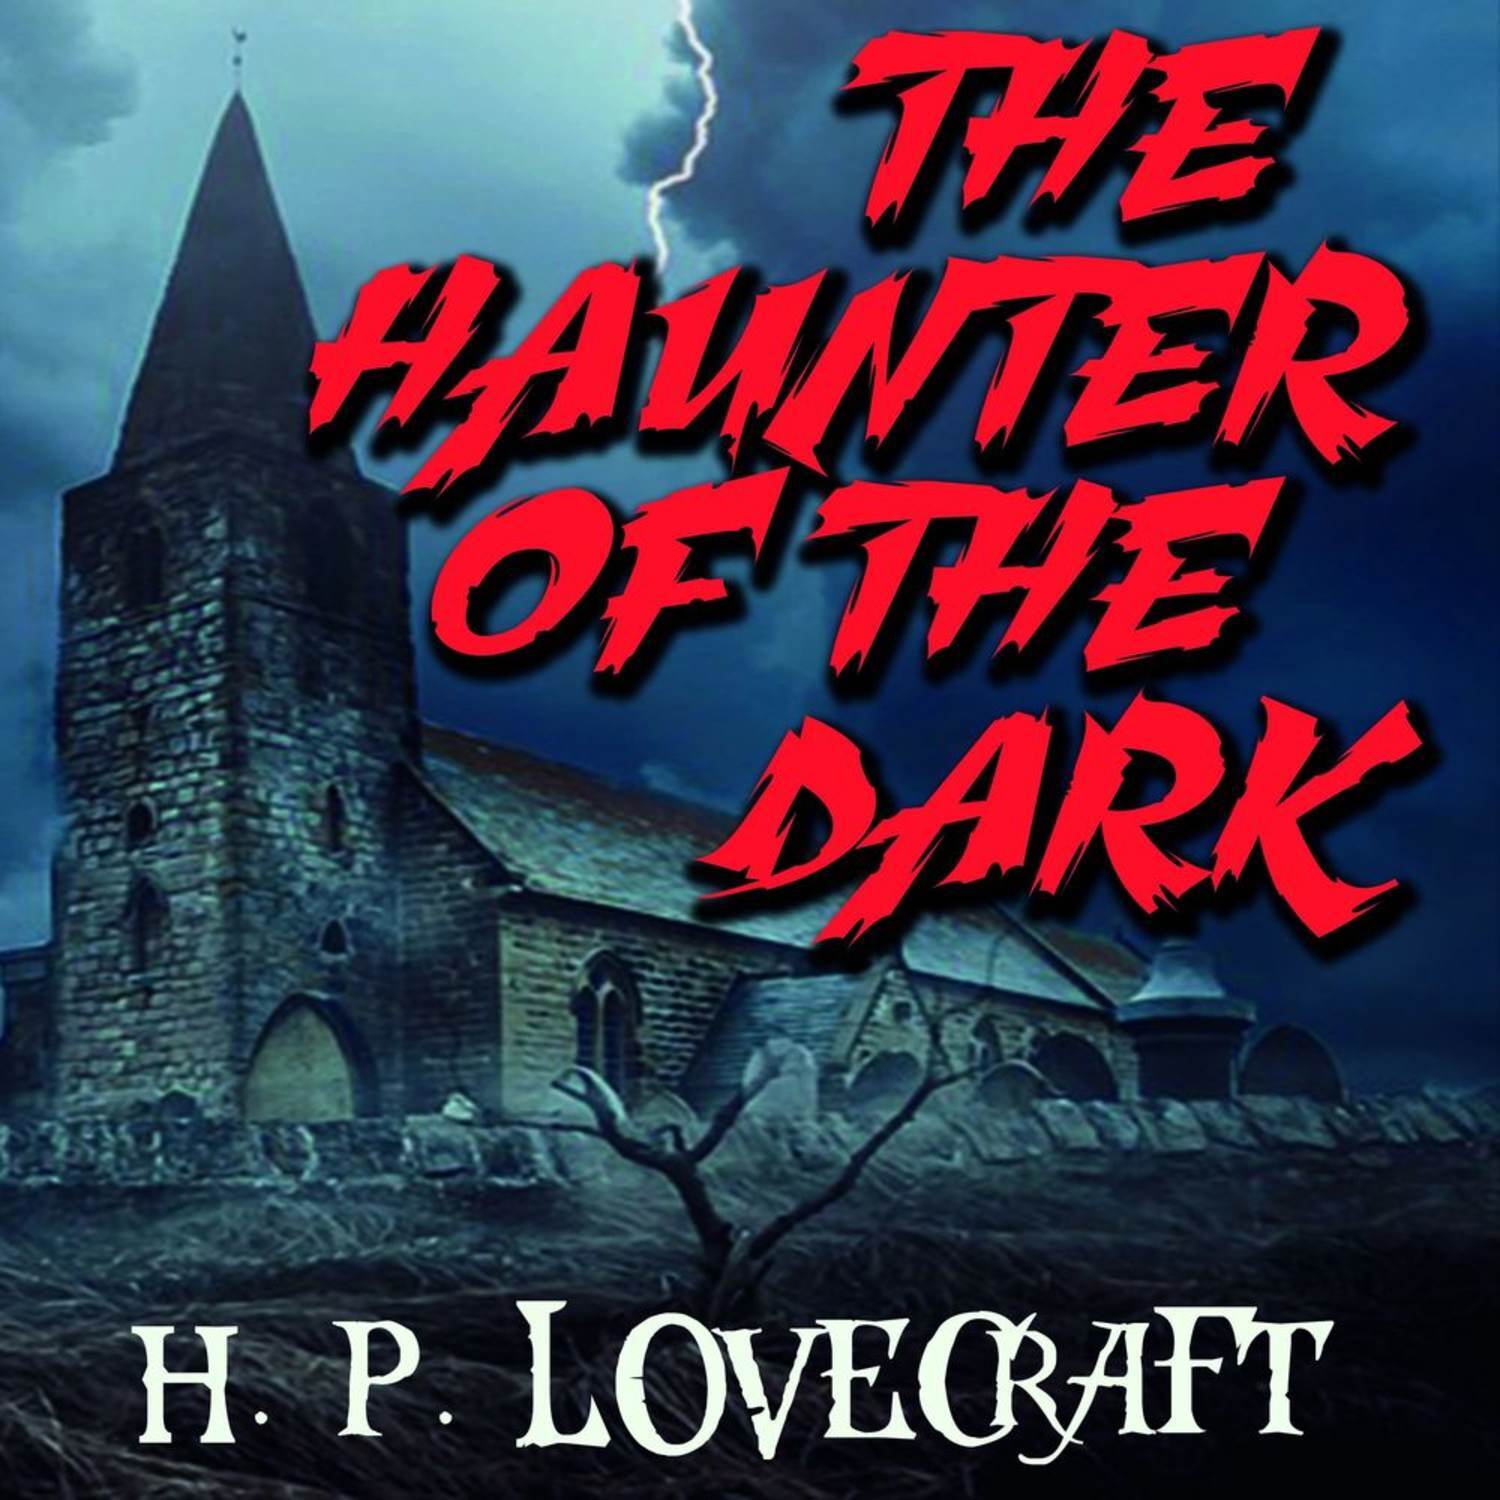 Кошки Ултара Говард Филлипс Лавкрафт. H.P. Lovecraft story the Haunter of the Dark.. Кошки Ултара Говард Филлипс Лавкрафт книга. Говард филлипс лавкрафт аудиокниги